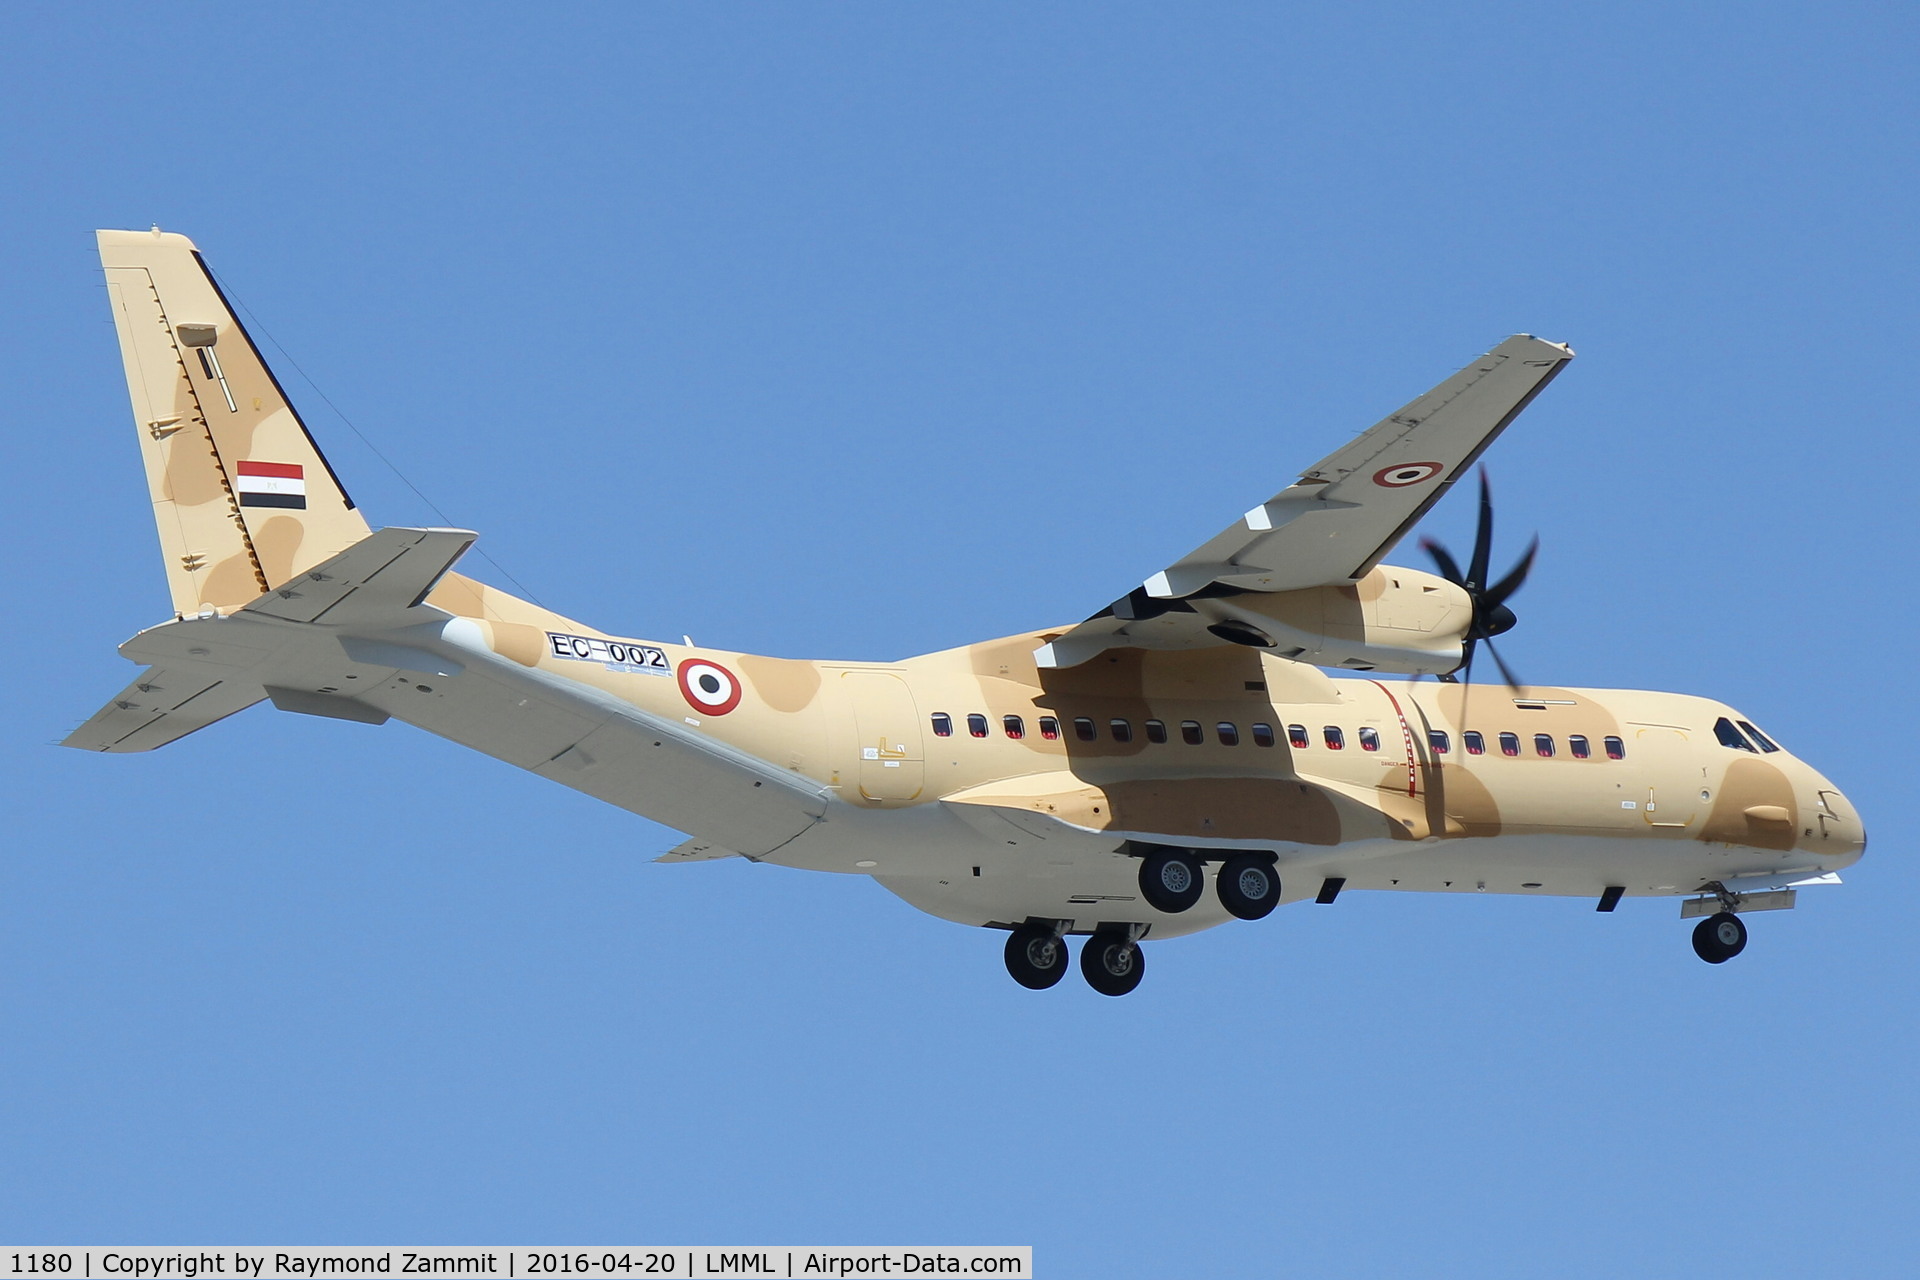 1180, CASA C-295M C/N S-134, CASA C-295M 1180 Egyptian Air Force on delivery flight. Seen here landing in Malta.